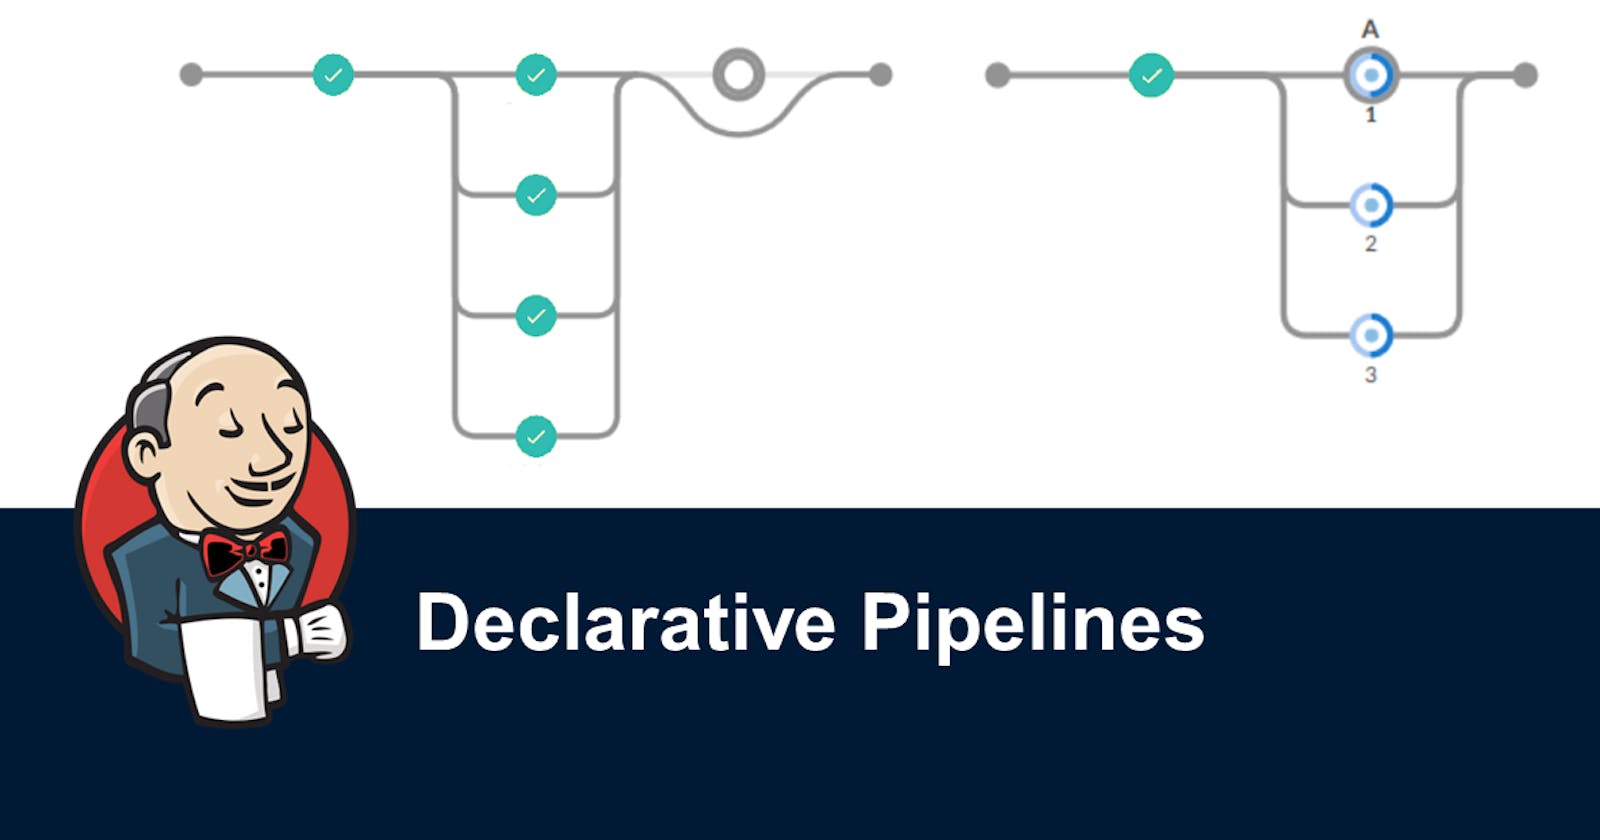 Jenkins Declarative Pipeline